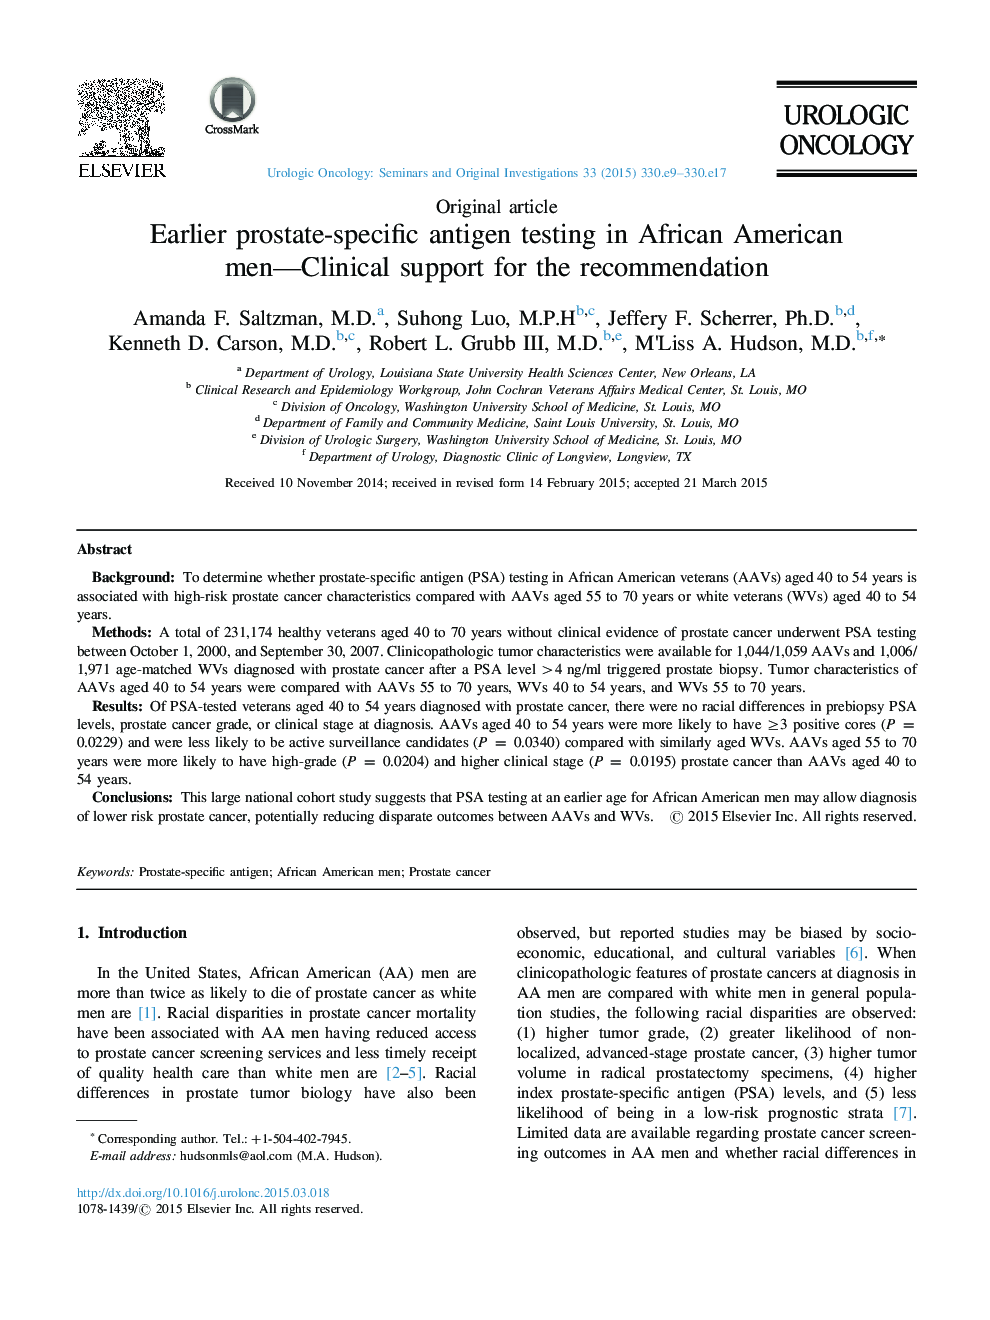 پیش از آن تست آنتی ژن خاص پروستات در مردان آفریقایی آمریکایی حمایت بالینی از توصیه 